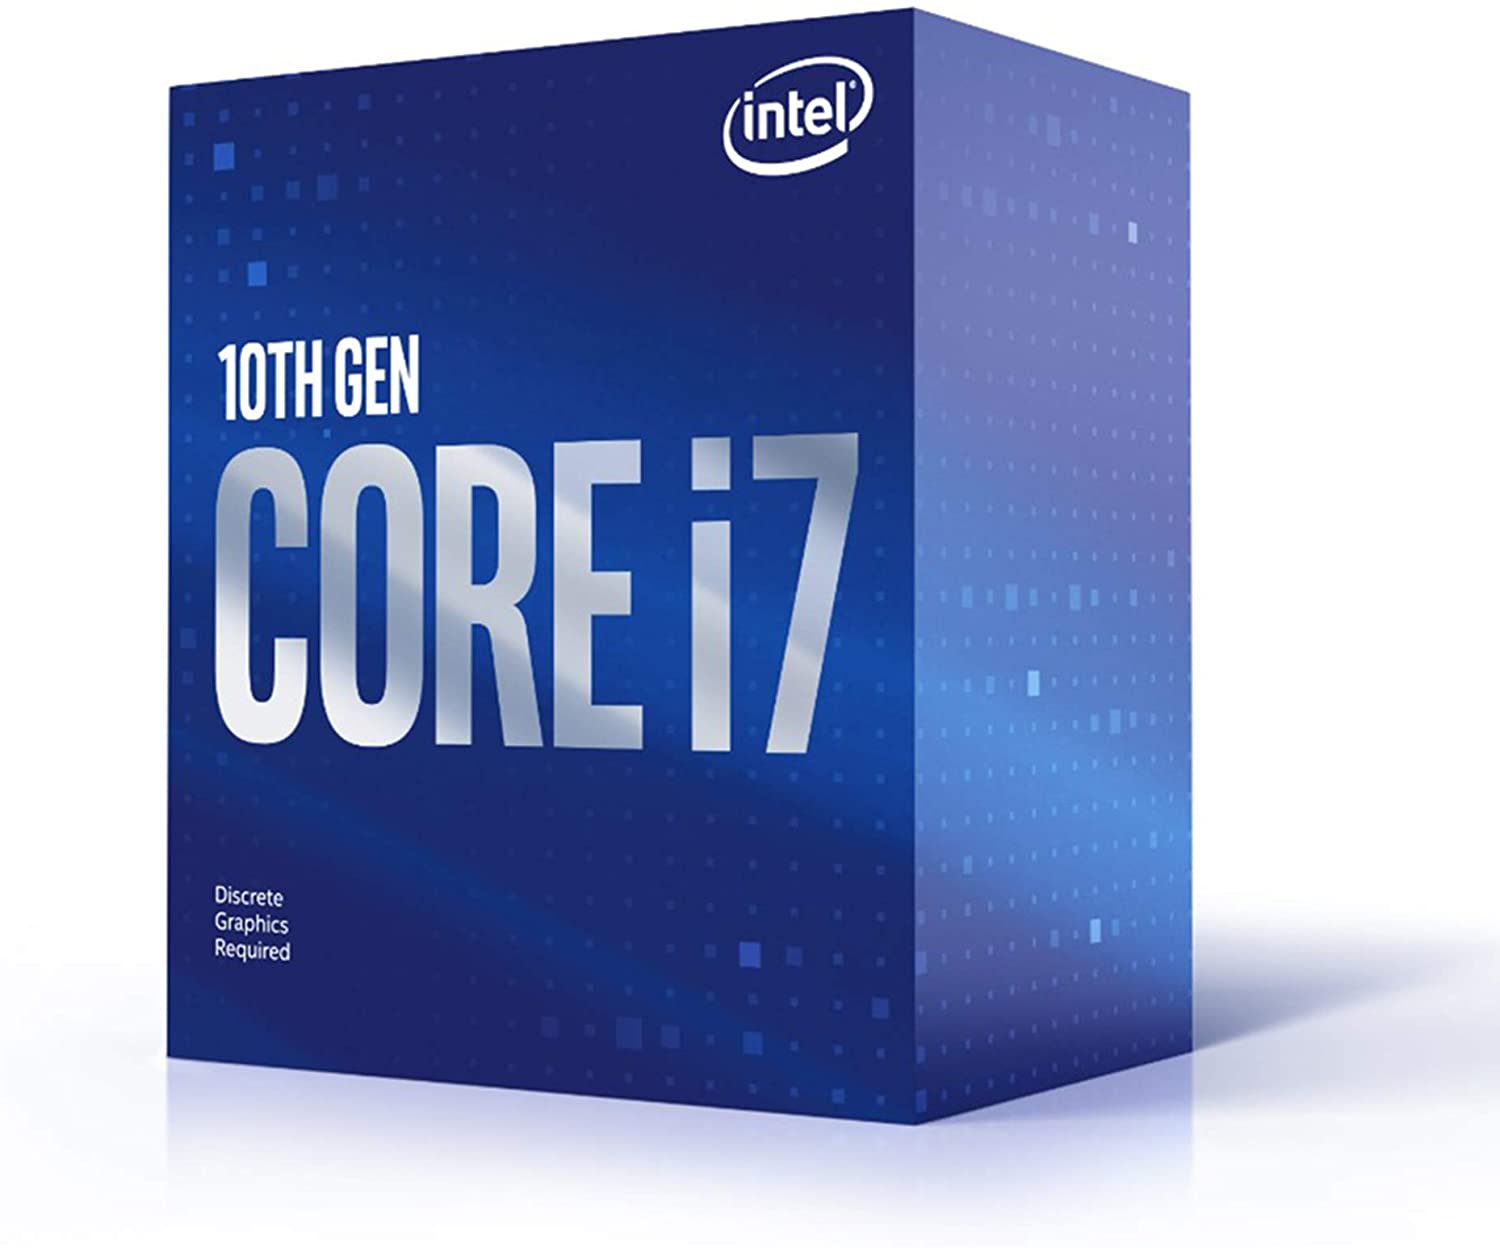 Procesador Intel Core i7 10700F, 10Th Gen, 4.8 Ghz, 8 Nucleos, Lga 1200, Nuevo, garantia 1  año